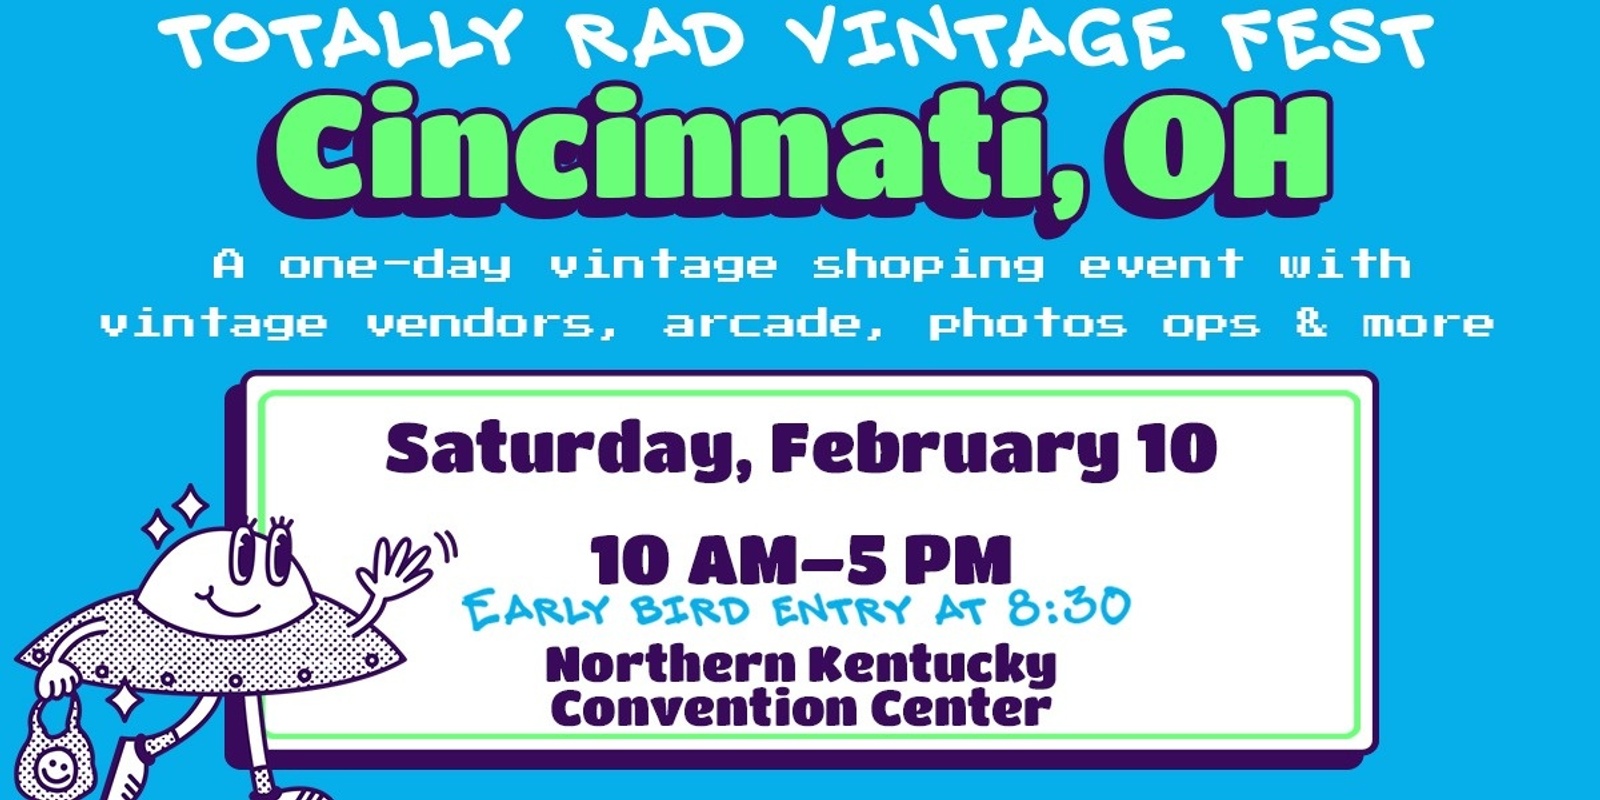 Banner image for Totally Rad Vintage Fest - Cincinnati